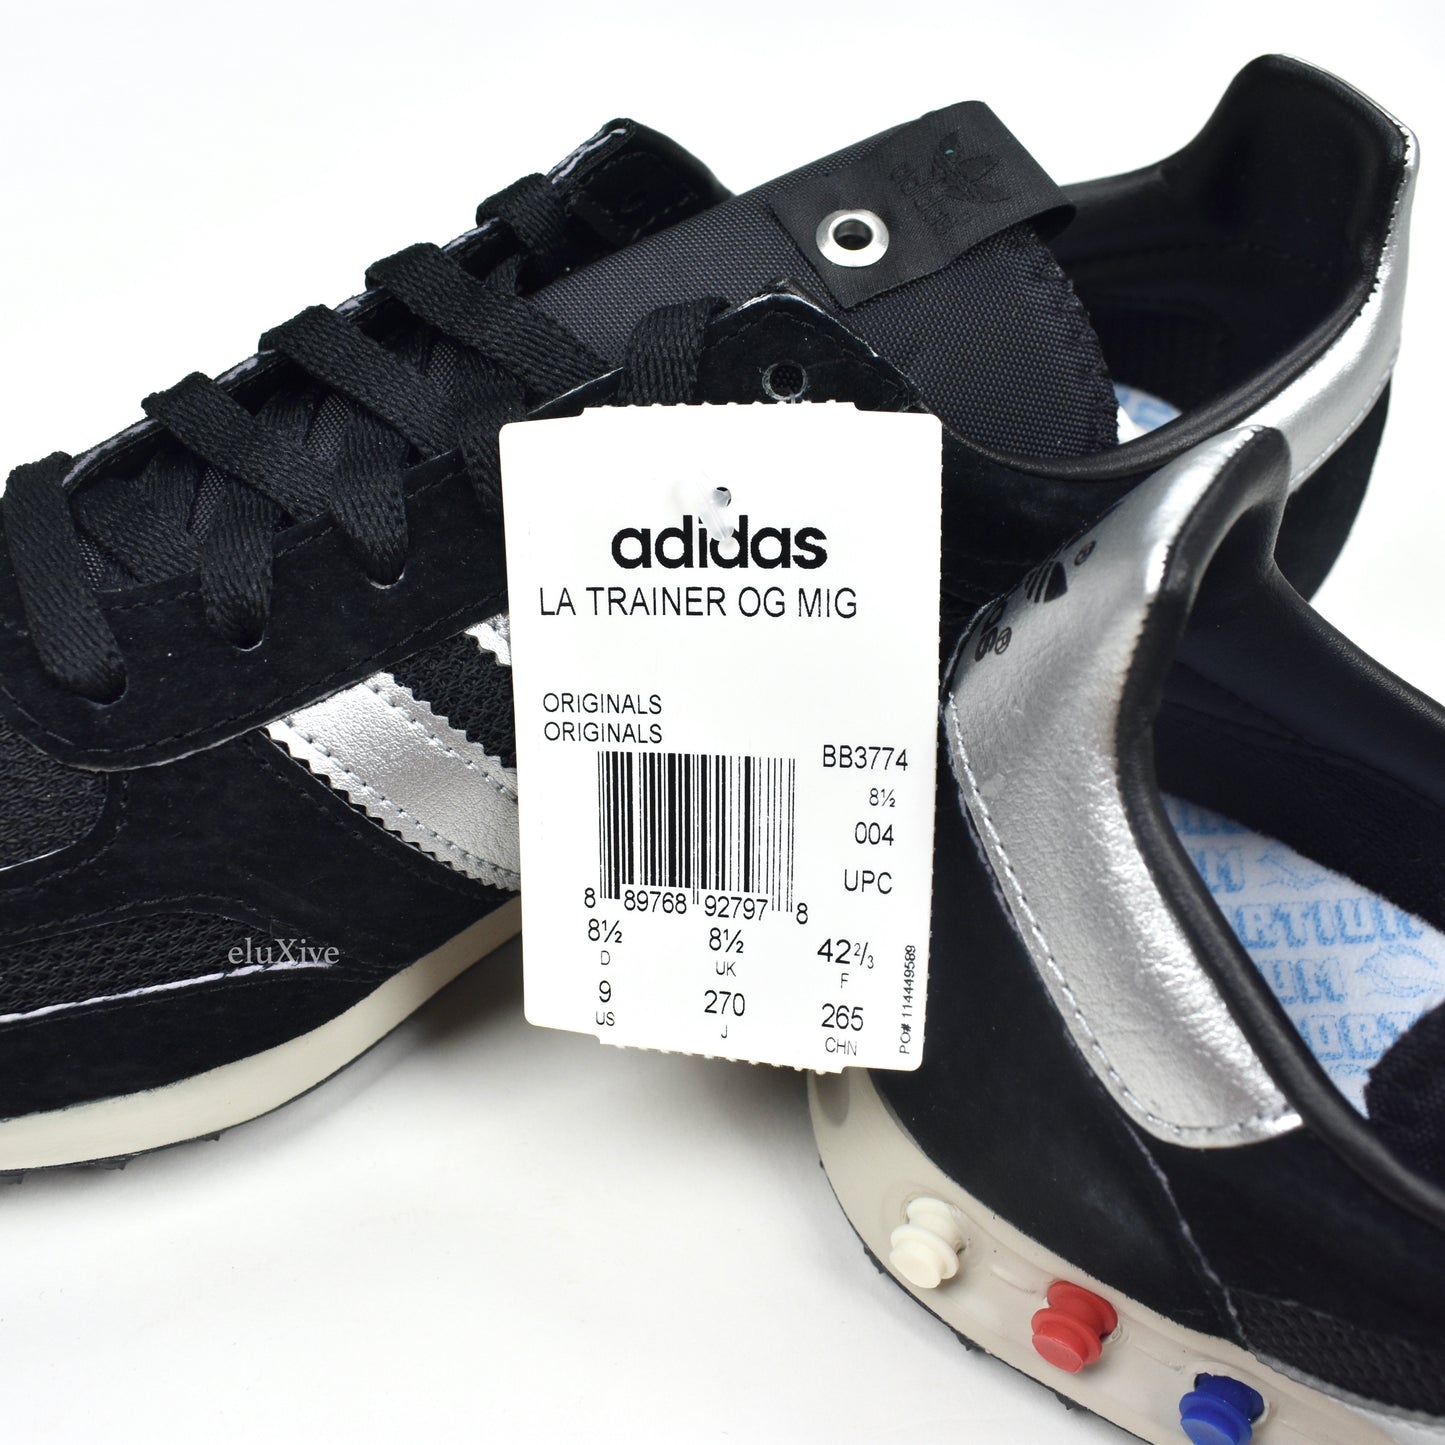 Adidas - LA Trainer OG MIG 'Made in Germany' (Black)